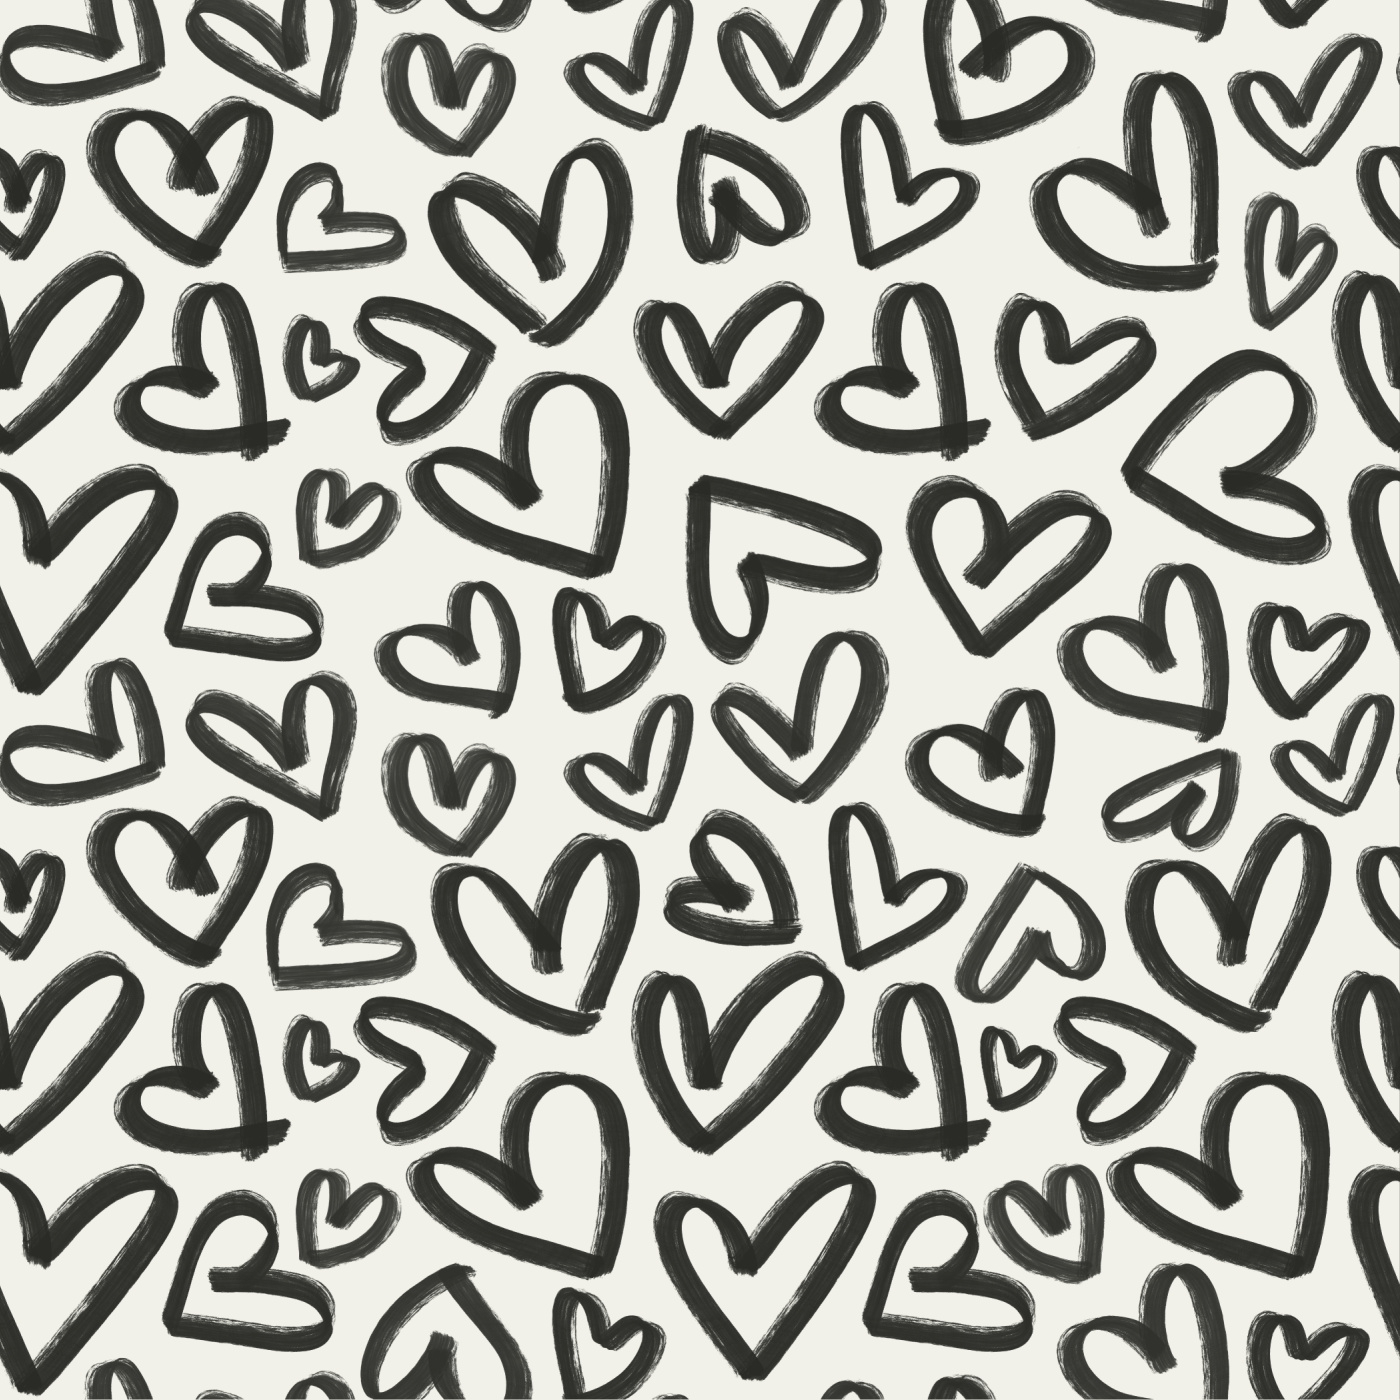 Handmade Hearts Wallpaper